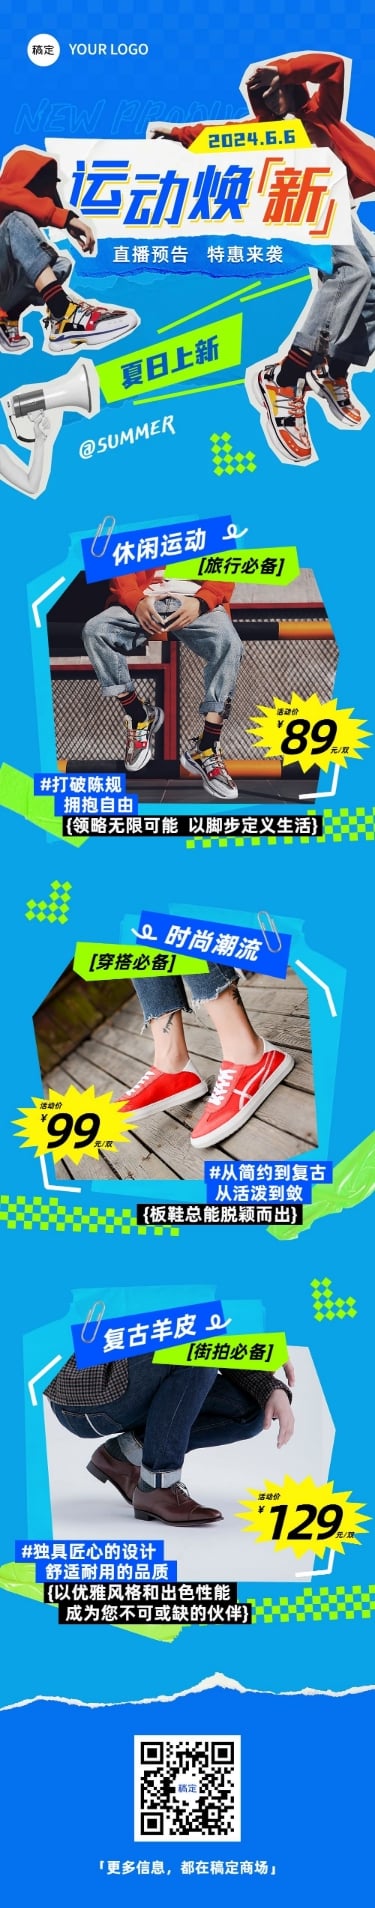 夏季鞋服卖货宣传微信公众号文章长图预览效果